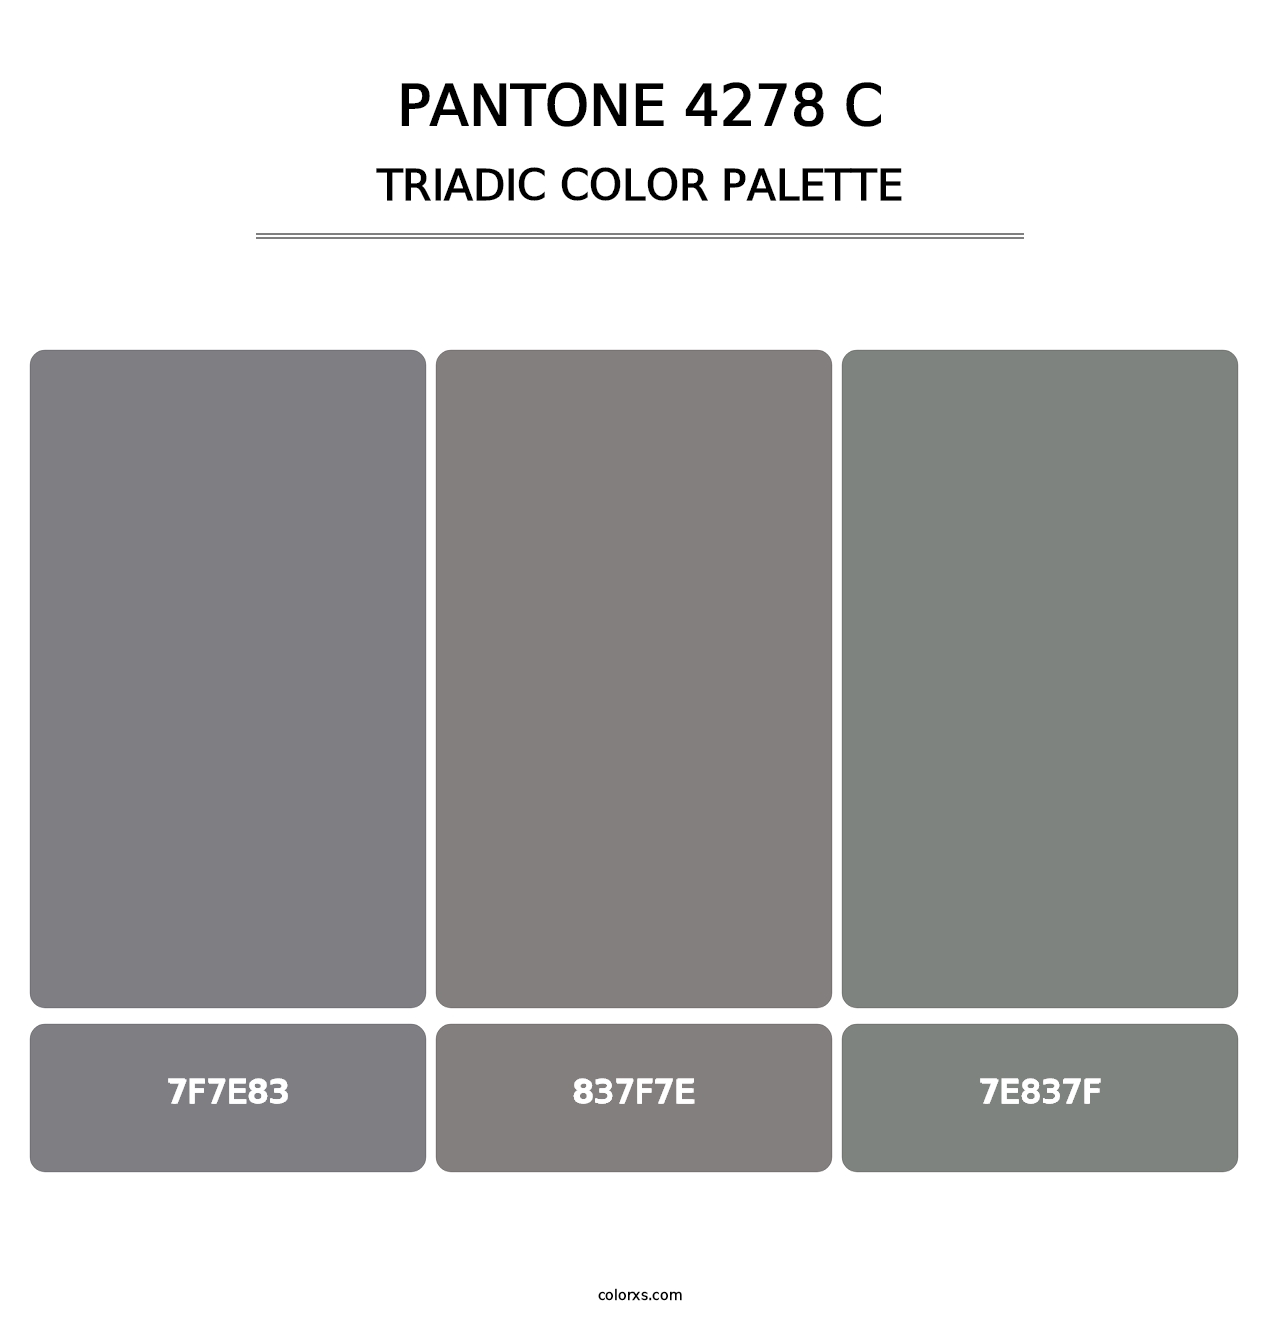 PANTONE 4278 C - Triadic Color Palette